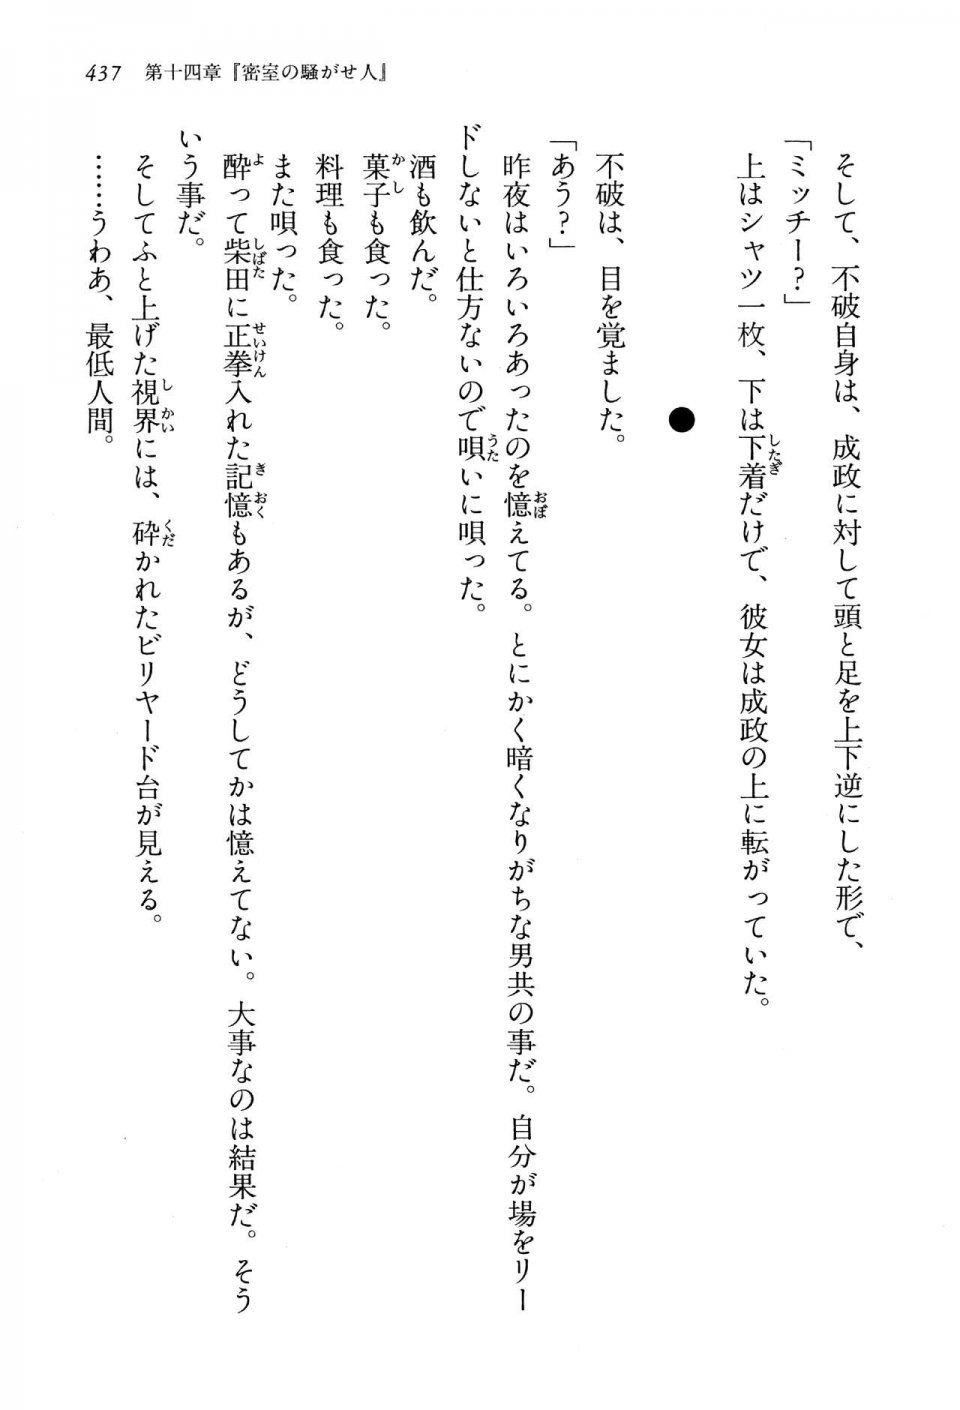 Kyoukai Senjou no Horizon LN Vol 13(6A) - Photo #437